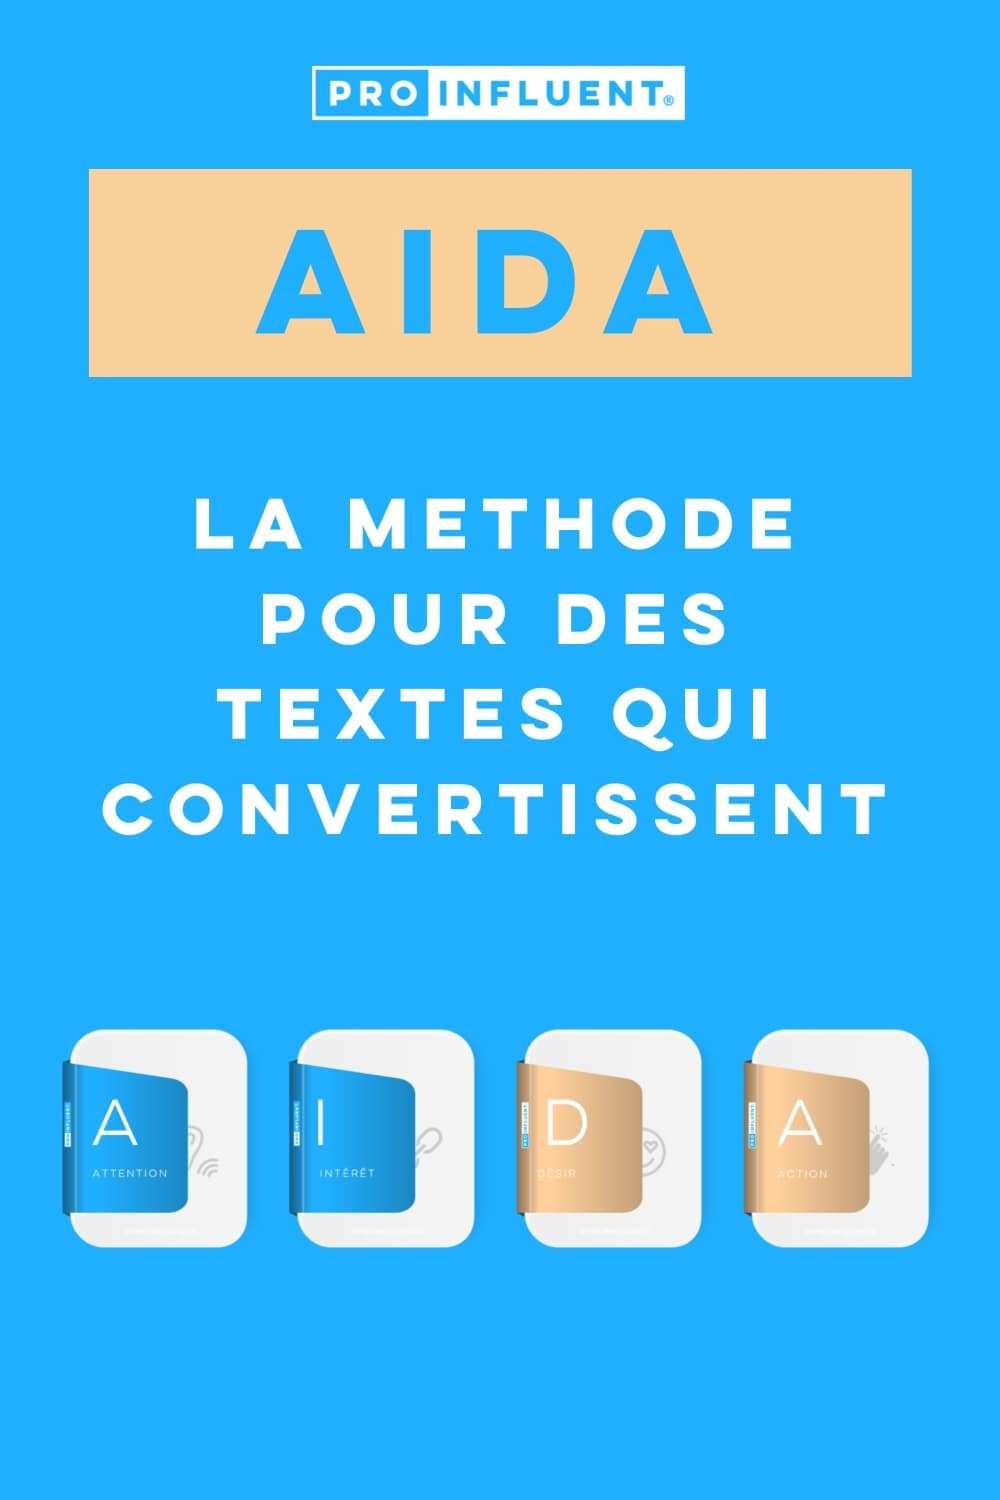 Método AIDA: escribir textos que conviertan